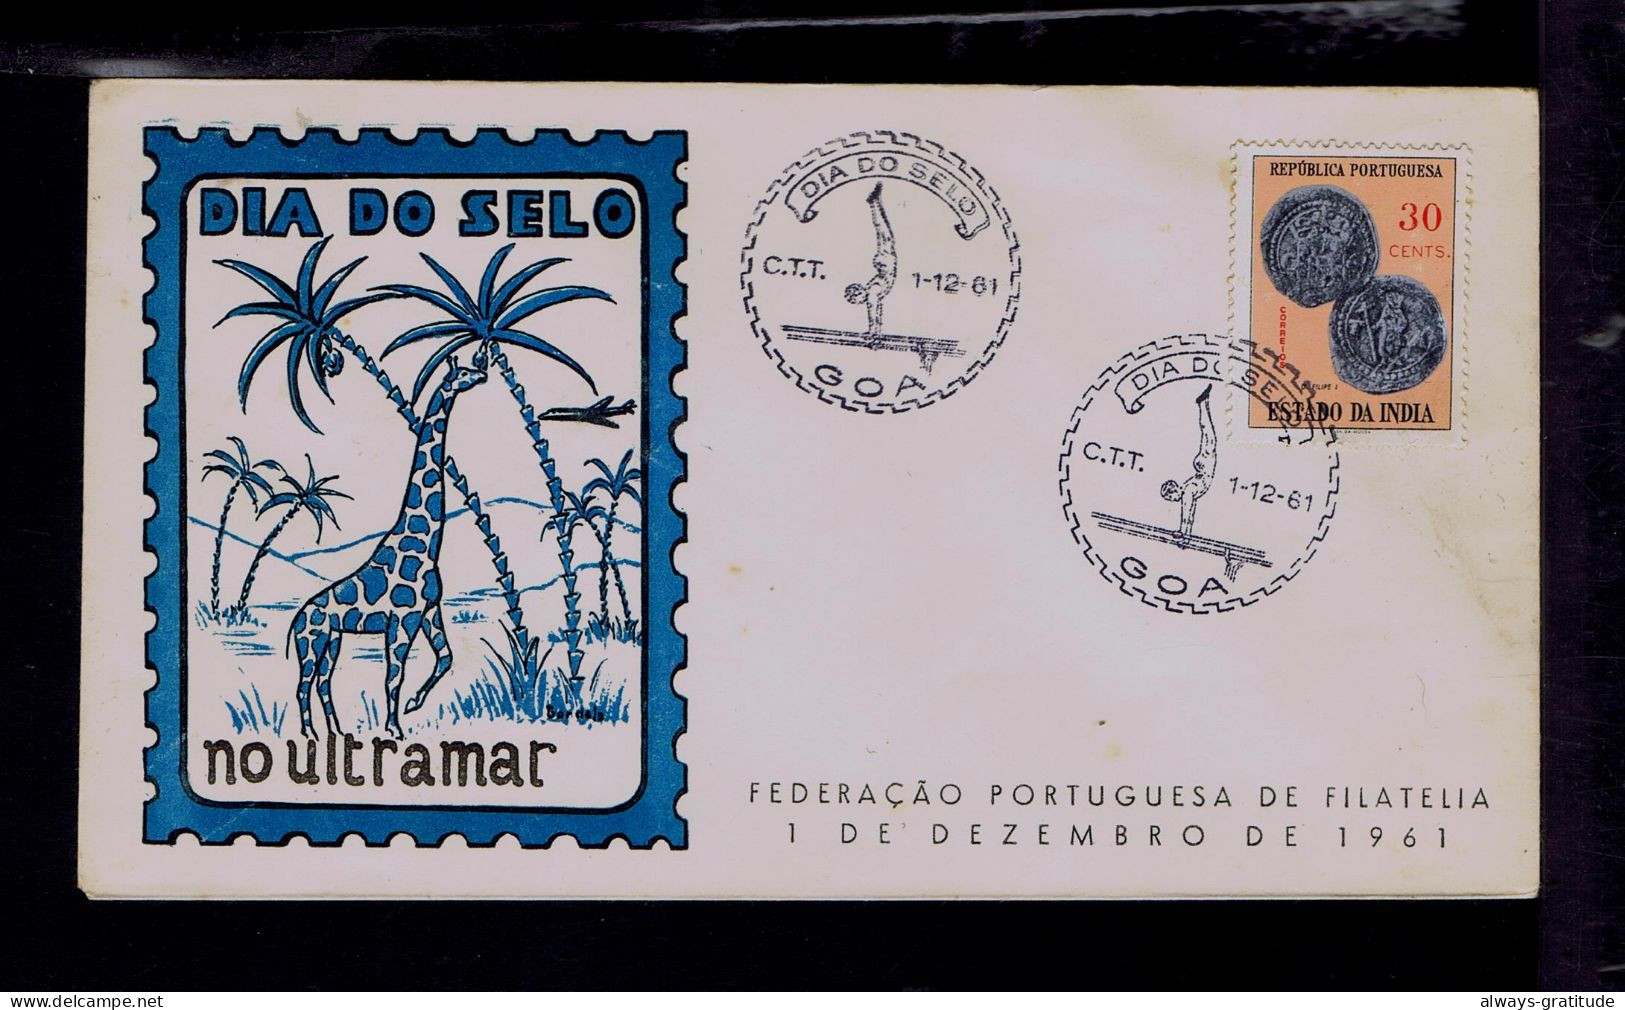 Sp10434 ESTADO DA INDIA 1961 Stamp's Day GOA Sports Gymnastique Coins Monaies Giraffe Faune Portugal - Monete